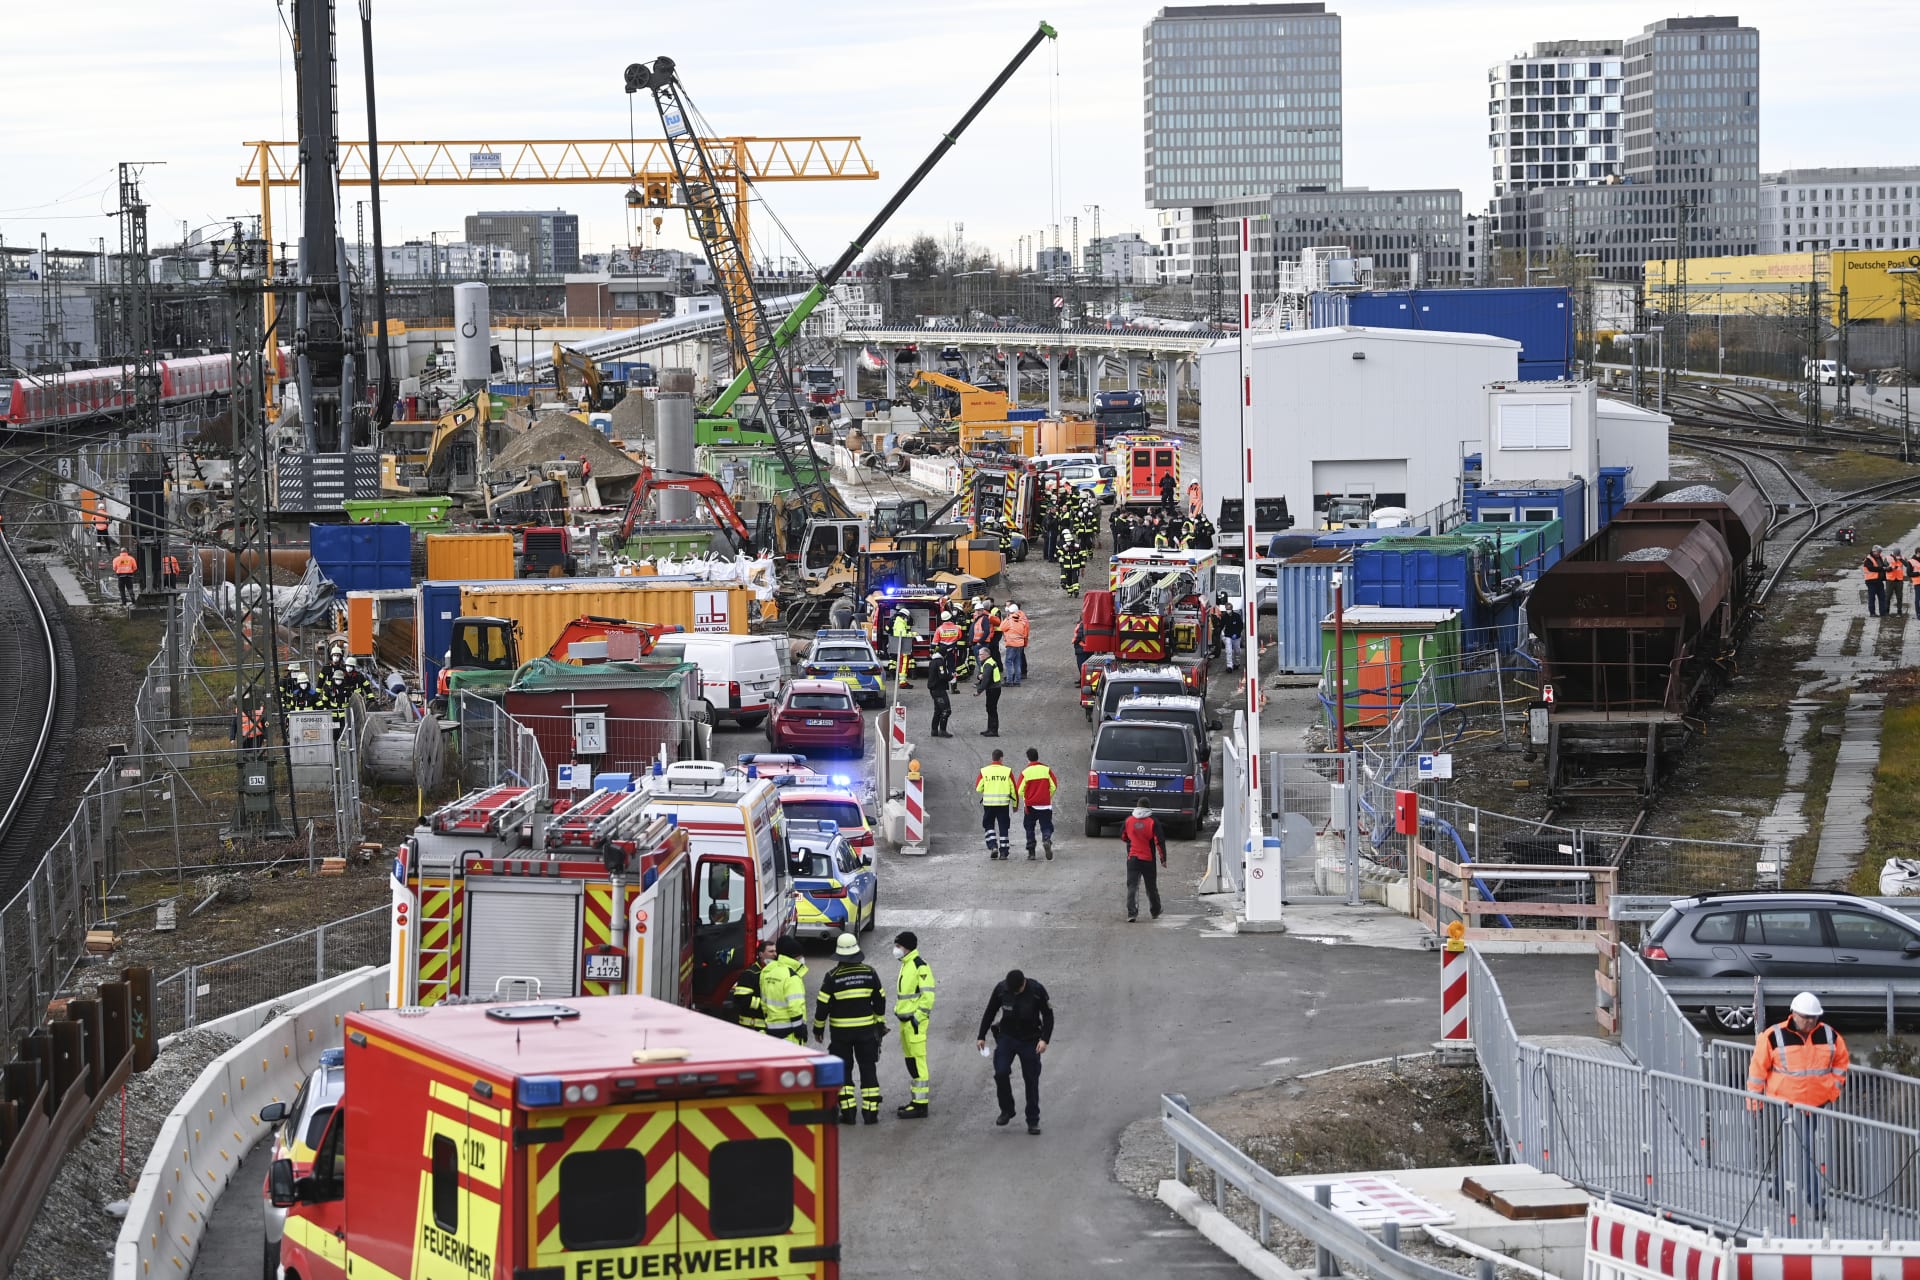 Výbuch se odehrál nedaleko nádraží Donnersbergerbrück, na místě zasahovali záchranáři, policisté i hasiči.  